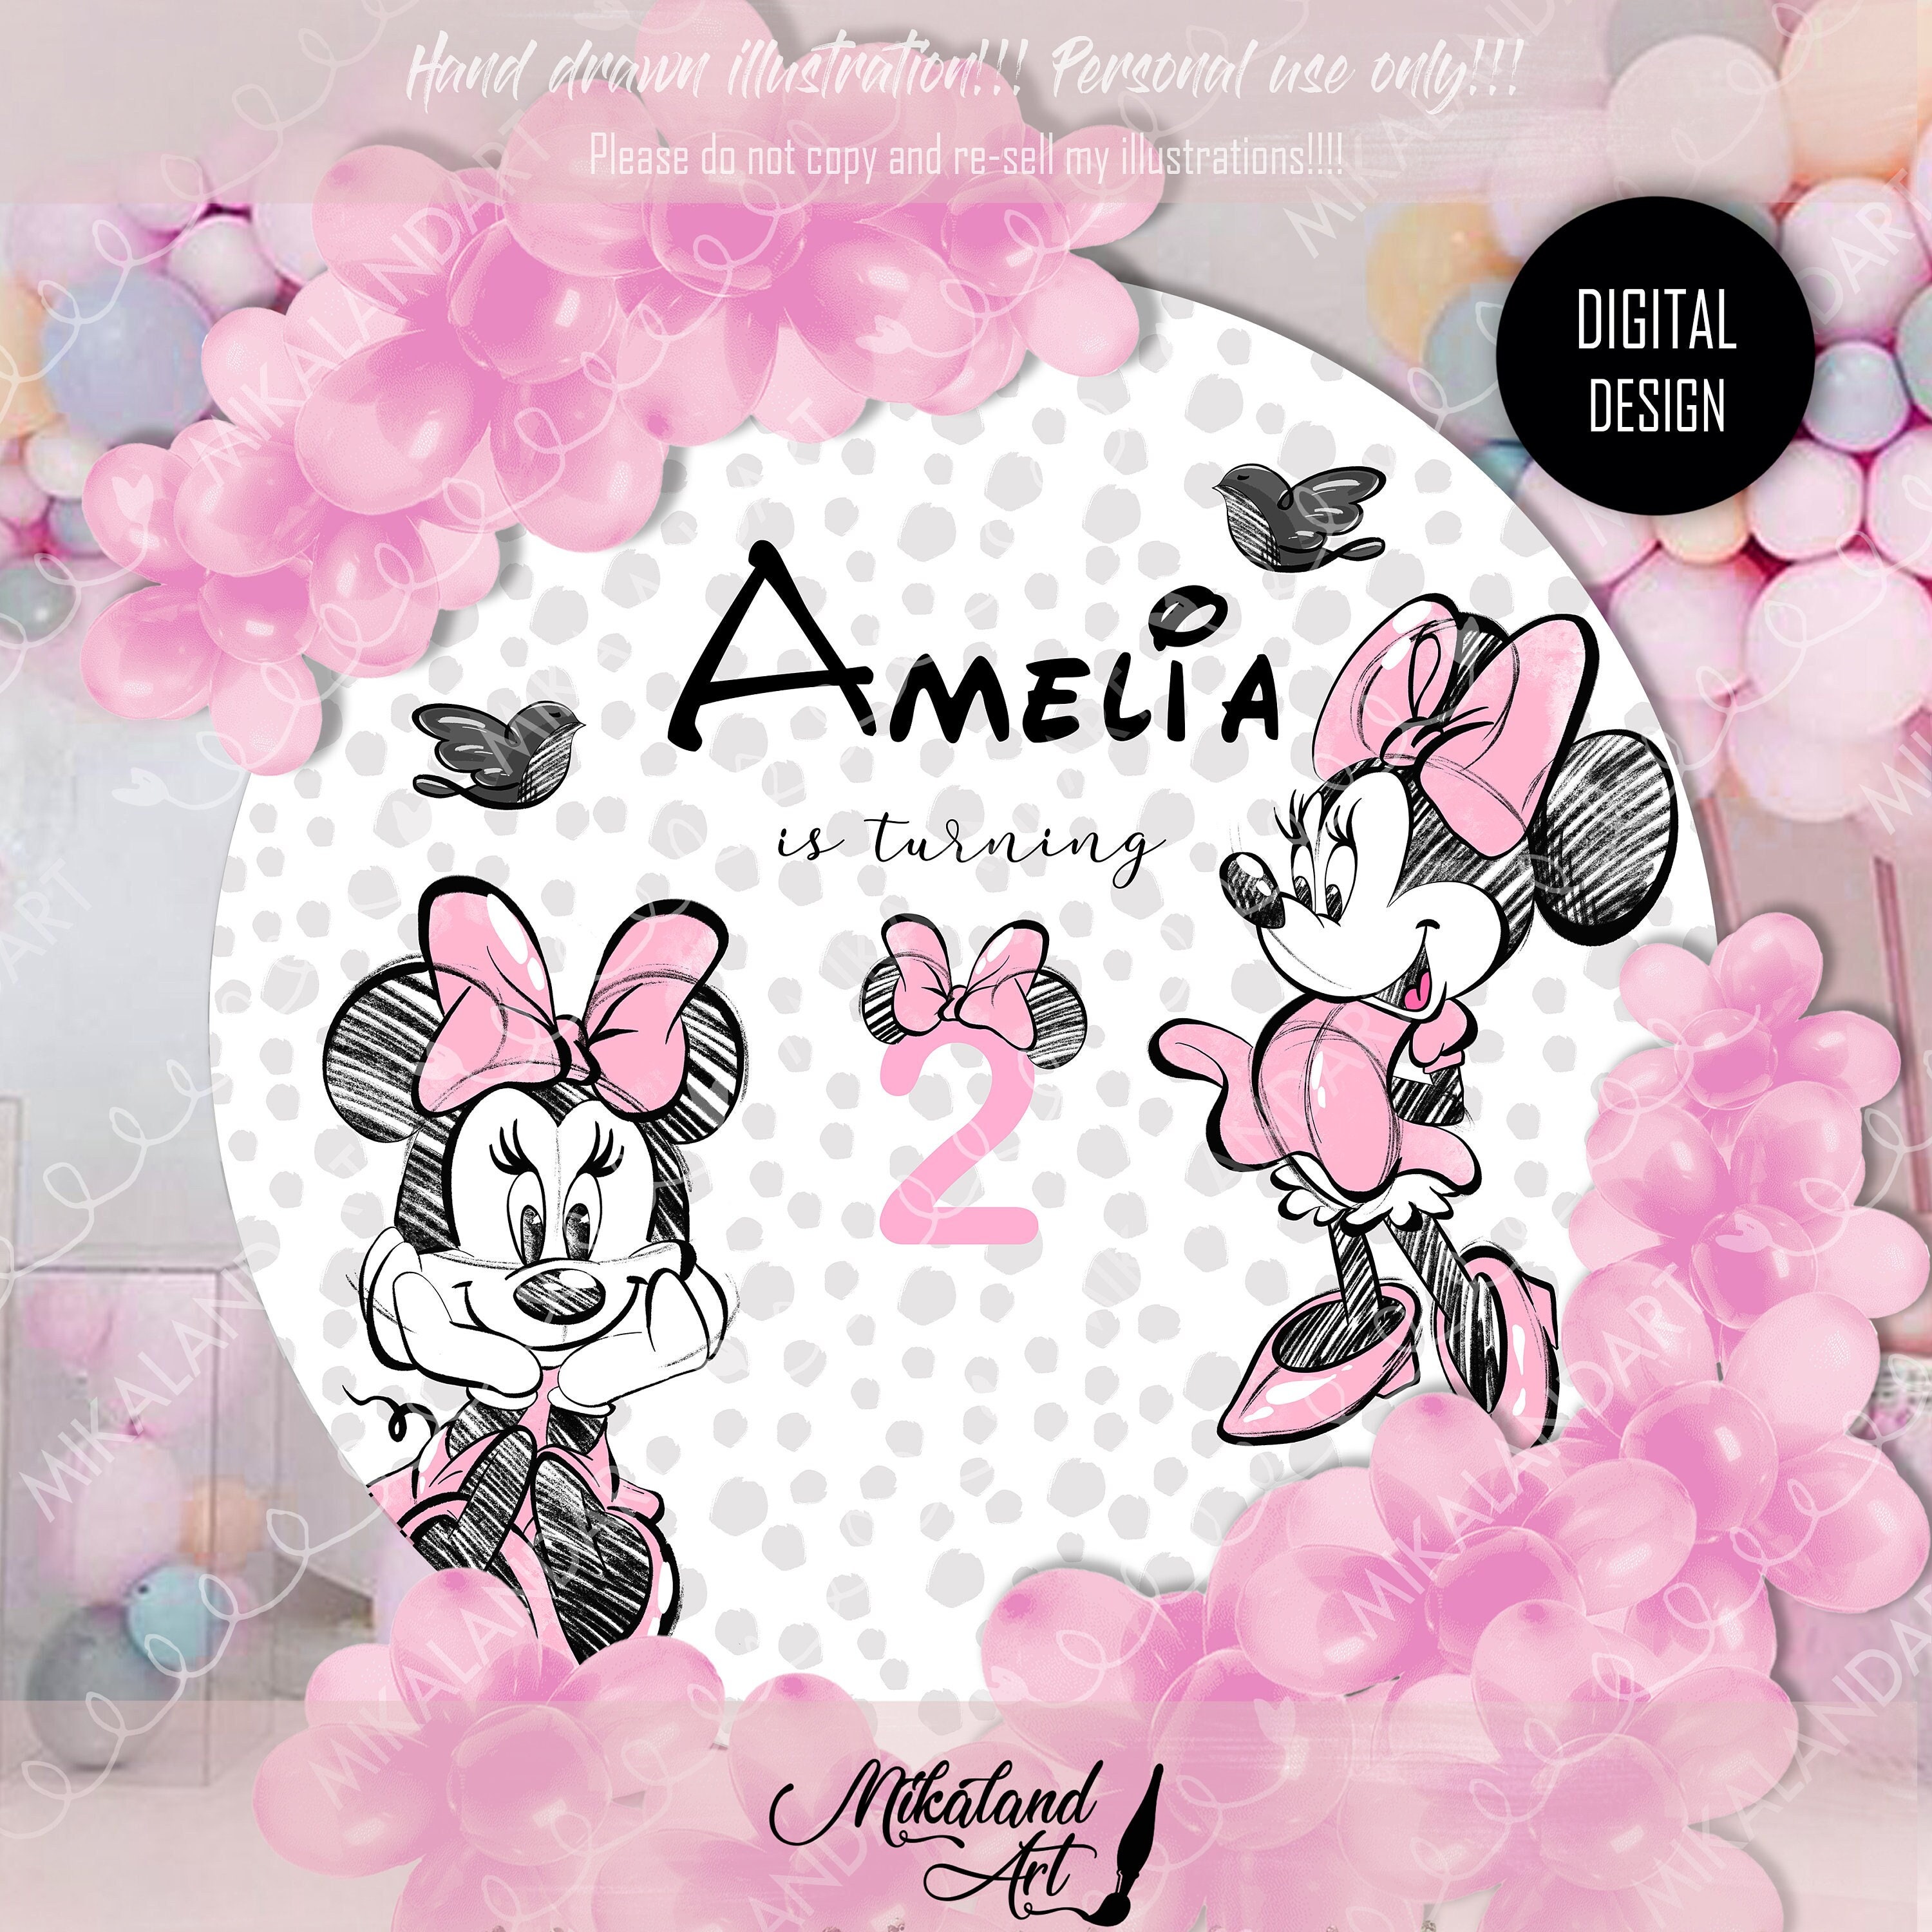  11 ramos de globos de Minnie Mouse para el primer cumpleaños,  decoración de fiesta, color rosa Disney : Juguetes y Juegos